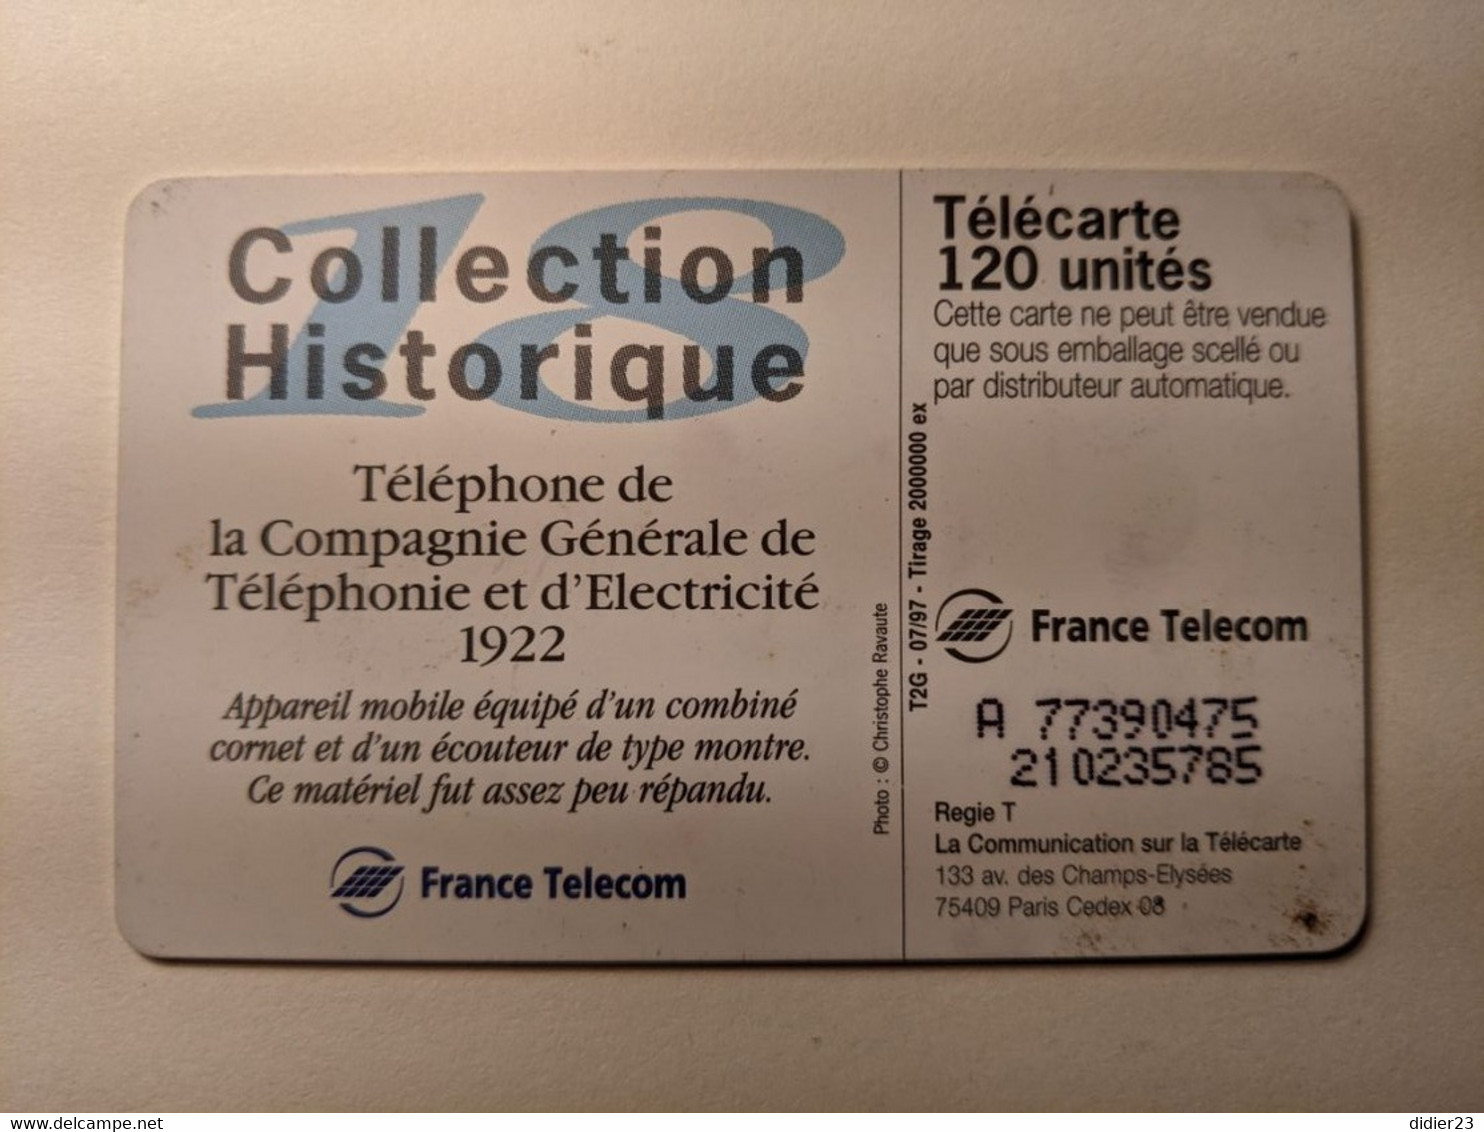 TELECARTE FRANCE TELECOM  50 COLLECTION HISTORIQUE TELEPHONE DE LA COMPAGNIE GENERALE TELEPHONIE 1922 - Téléphones